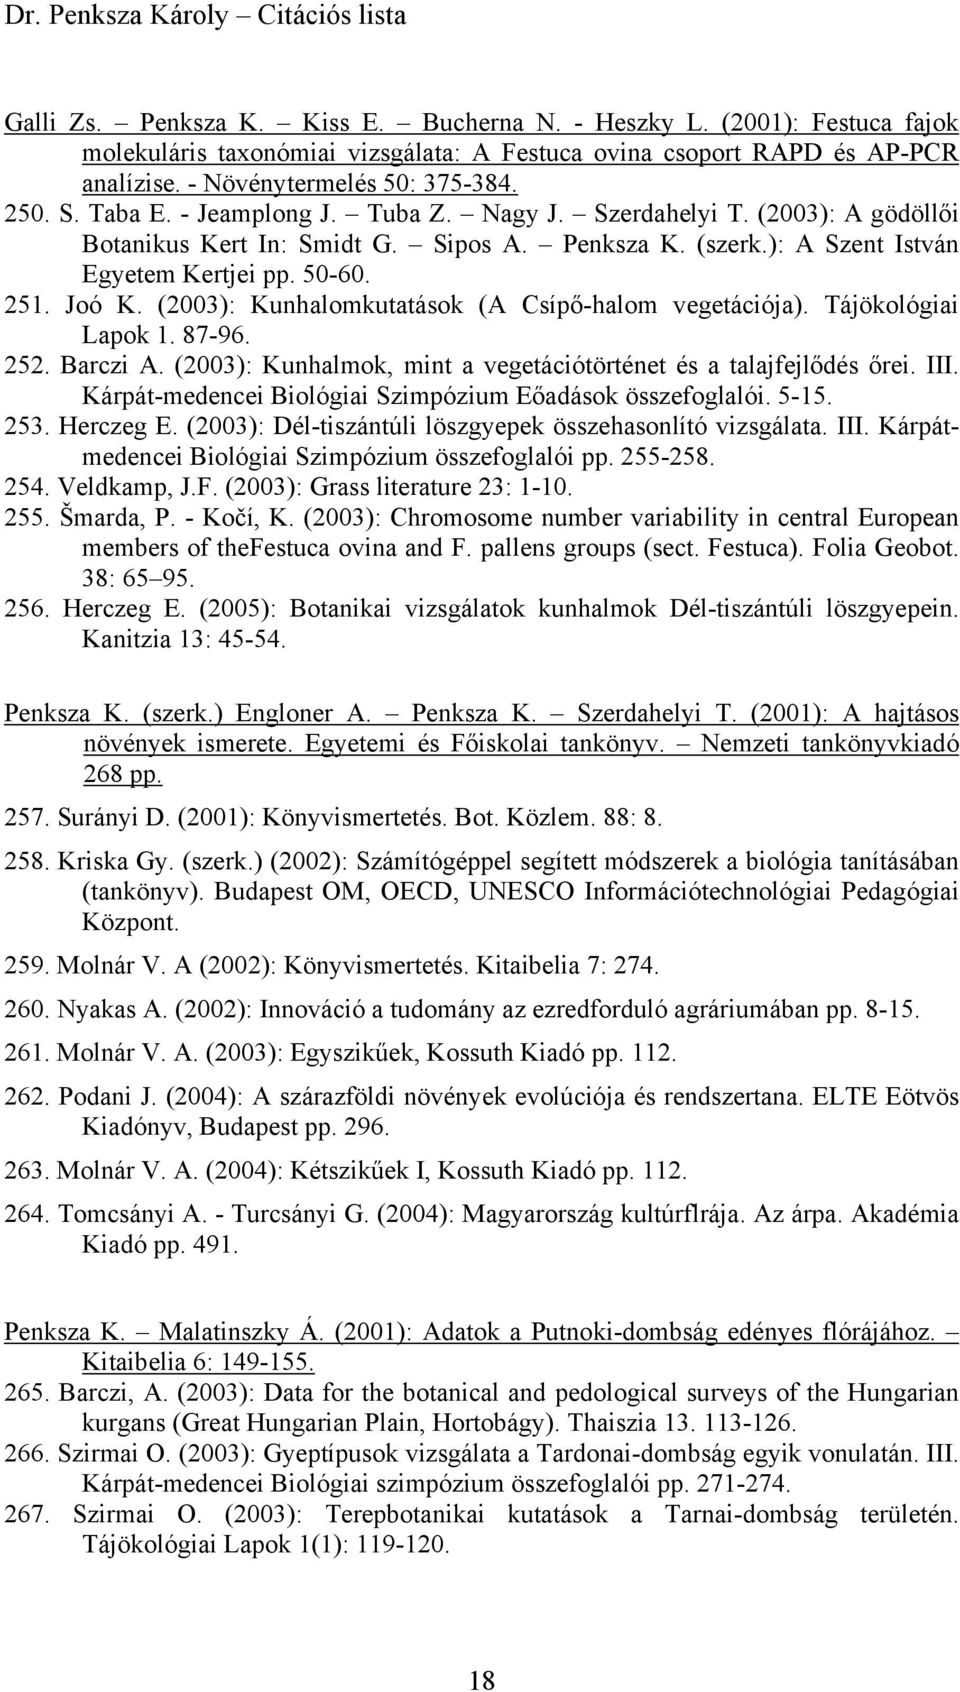 (2003): Kunhalomkutatások (A Csípő-halom vegetációja). Tájökológiai Lapok 1. 87-96. 252. Barczi A. (2003): Kunhalmok, mint a vegetációtörténet és a talajfejlődés őrei. III.